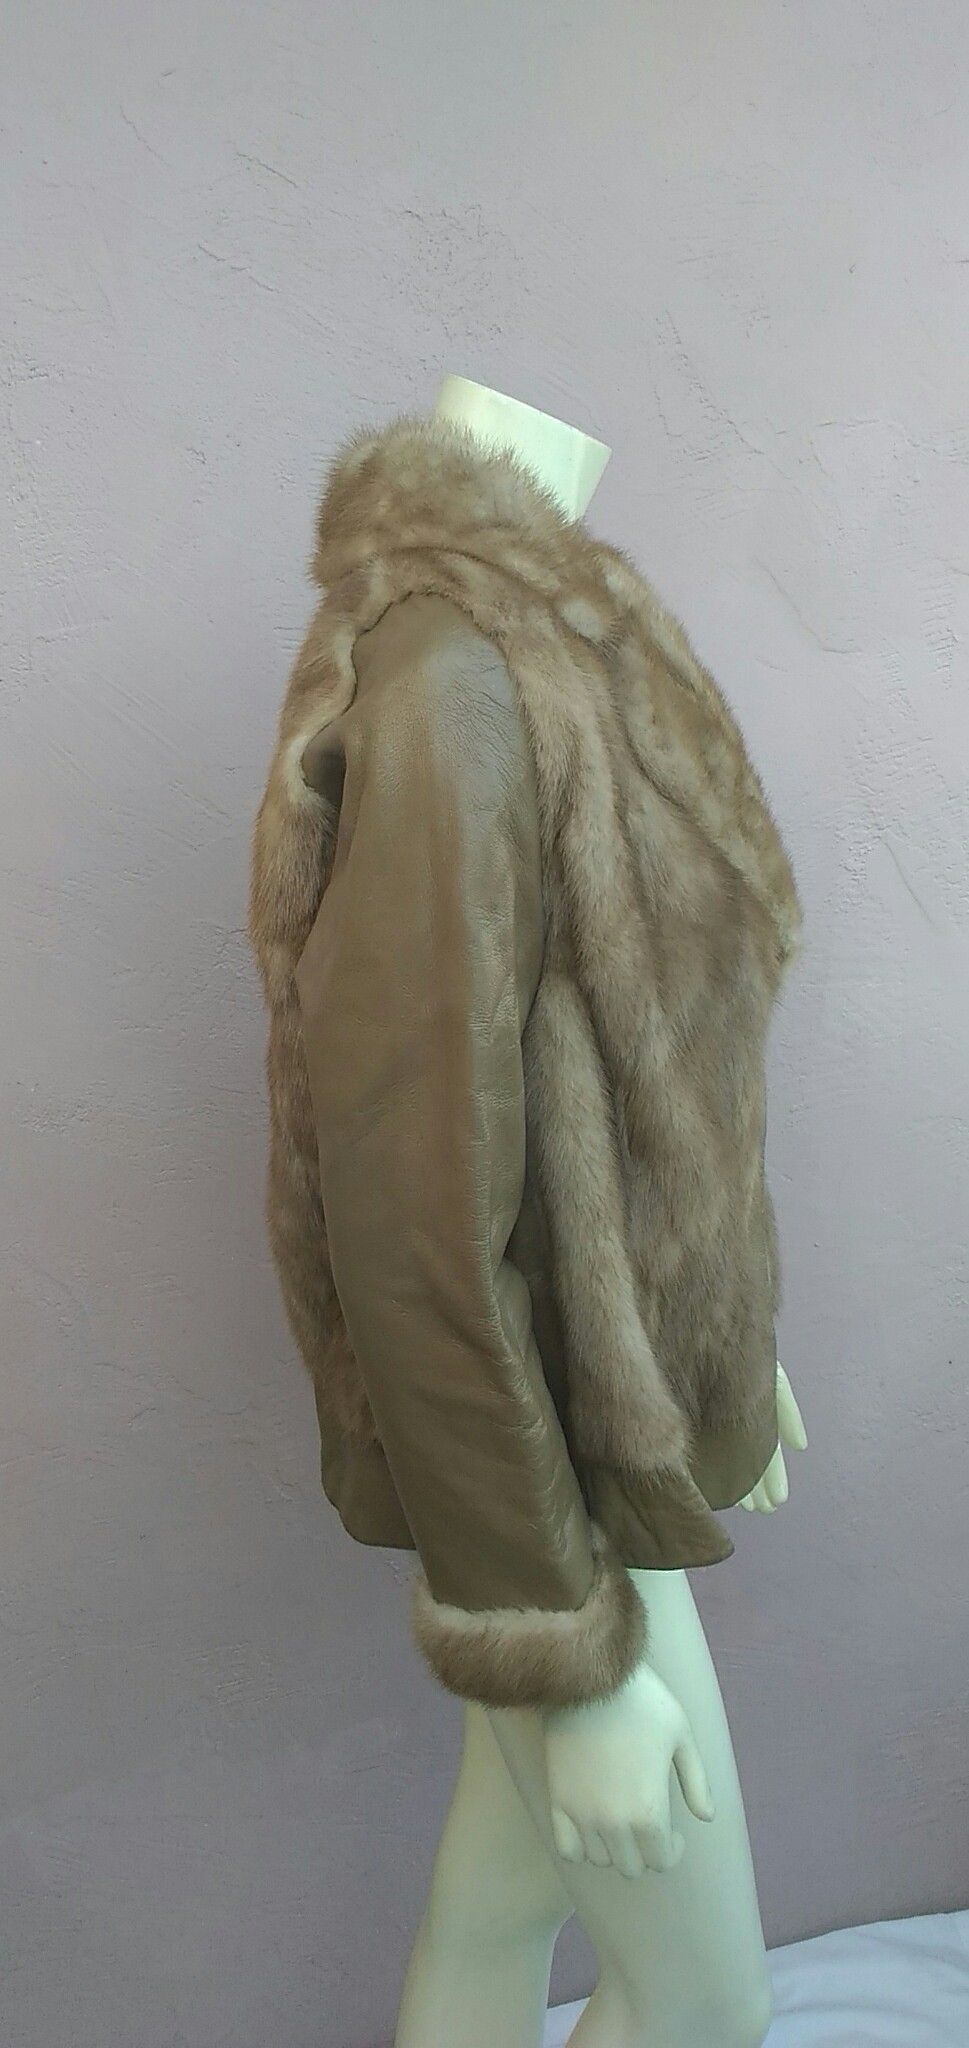 Vintage 1960's R D'Antonio Furs of San Francisco, CA Gorgeous Mink Fur Trim Leather Jacket